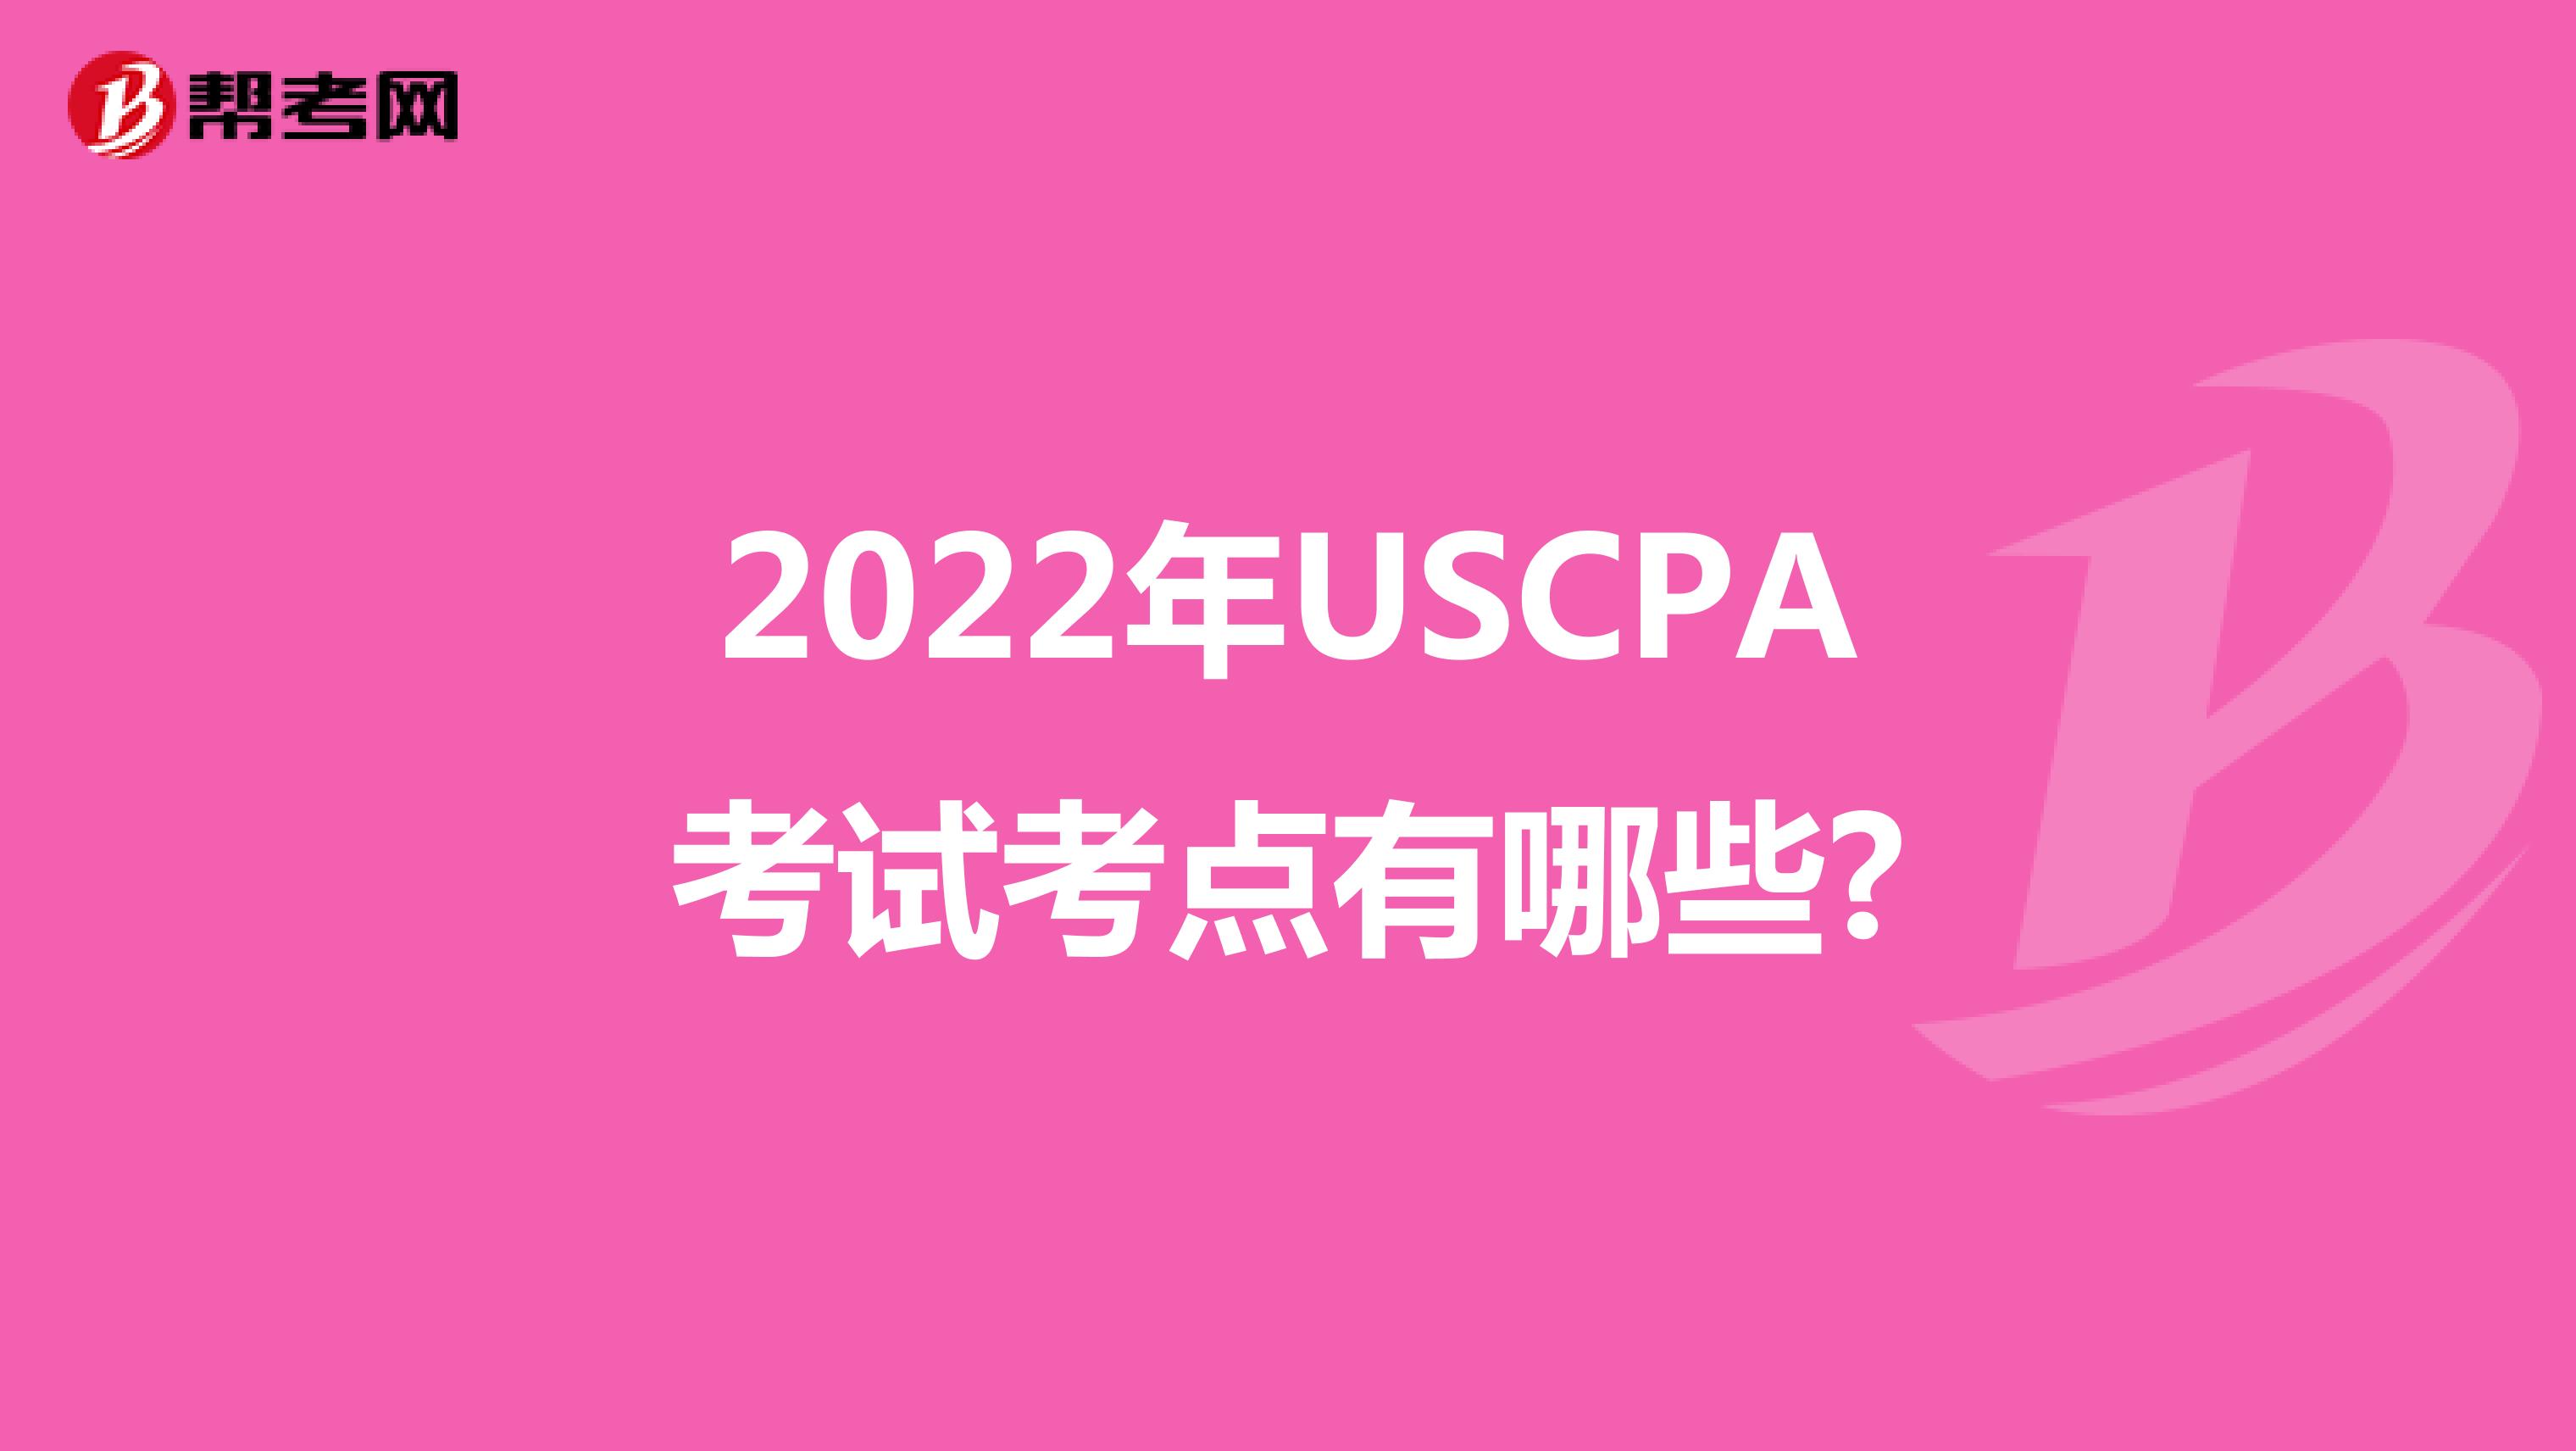 2022年USCPA考试考点有哪些?